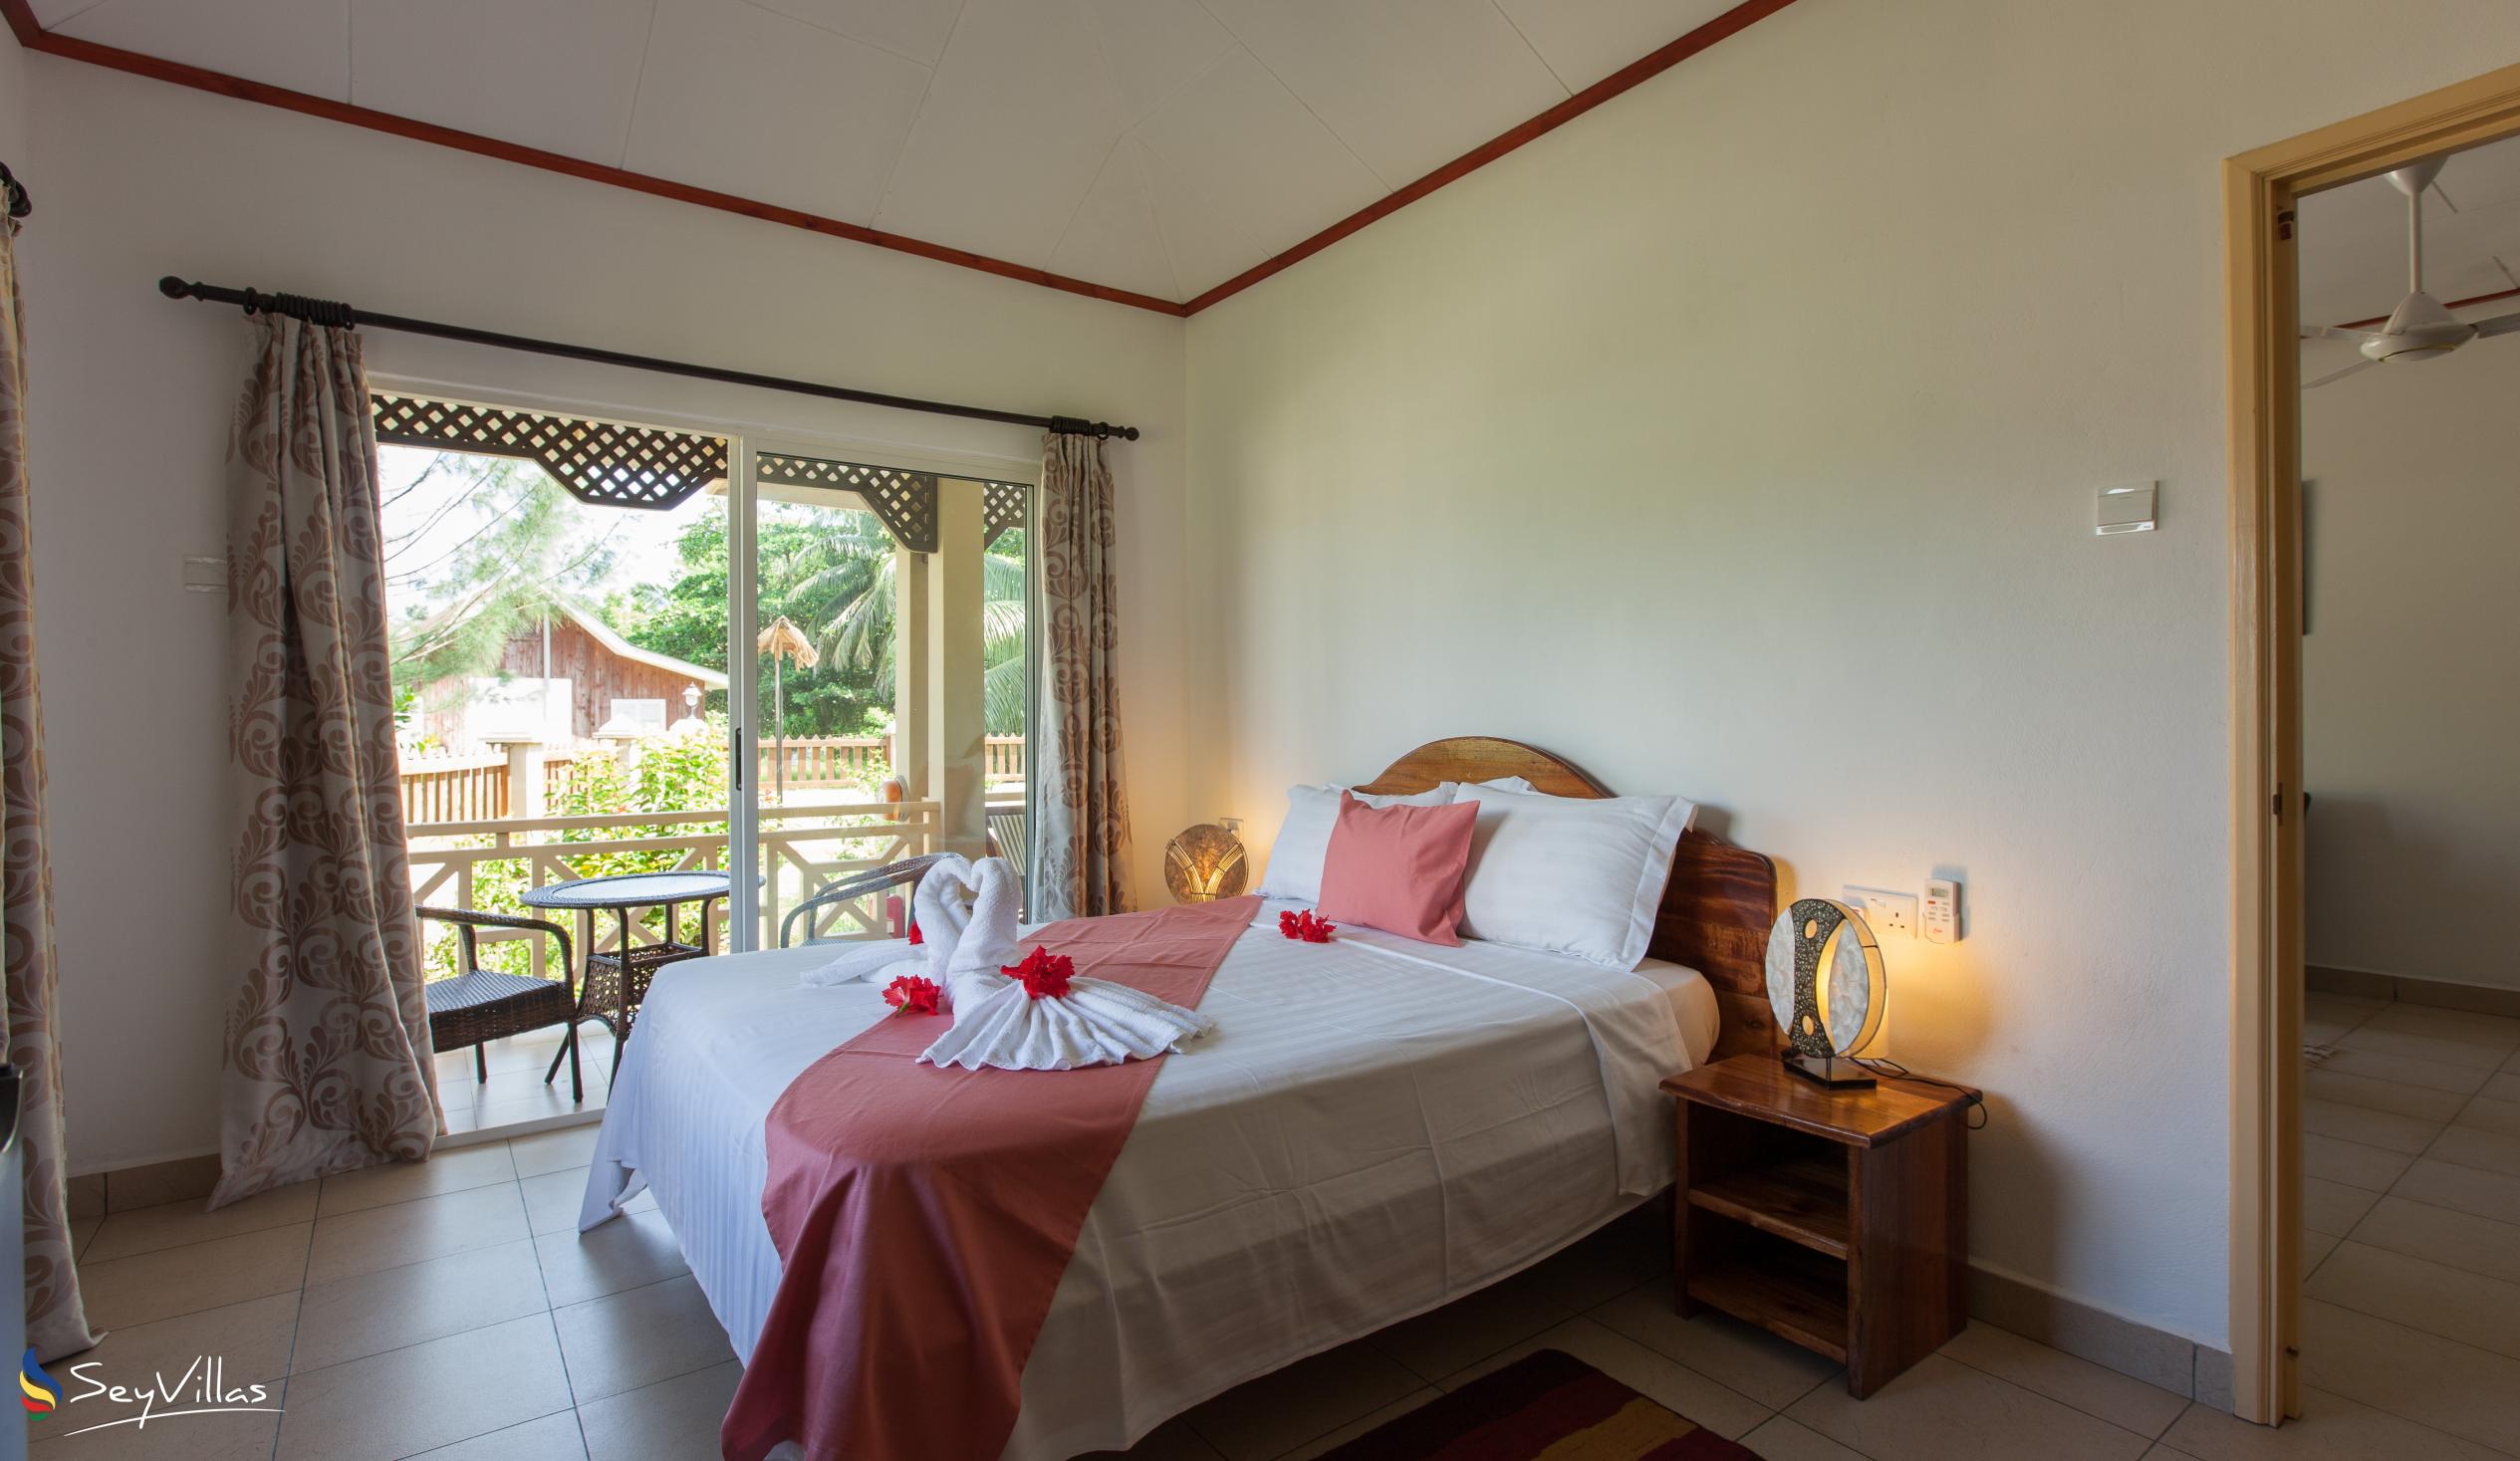 Foto 55: Hostellerie La Digue - Chalet 2 chambres - La Digue (Seychelles)